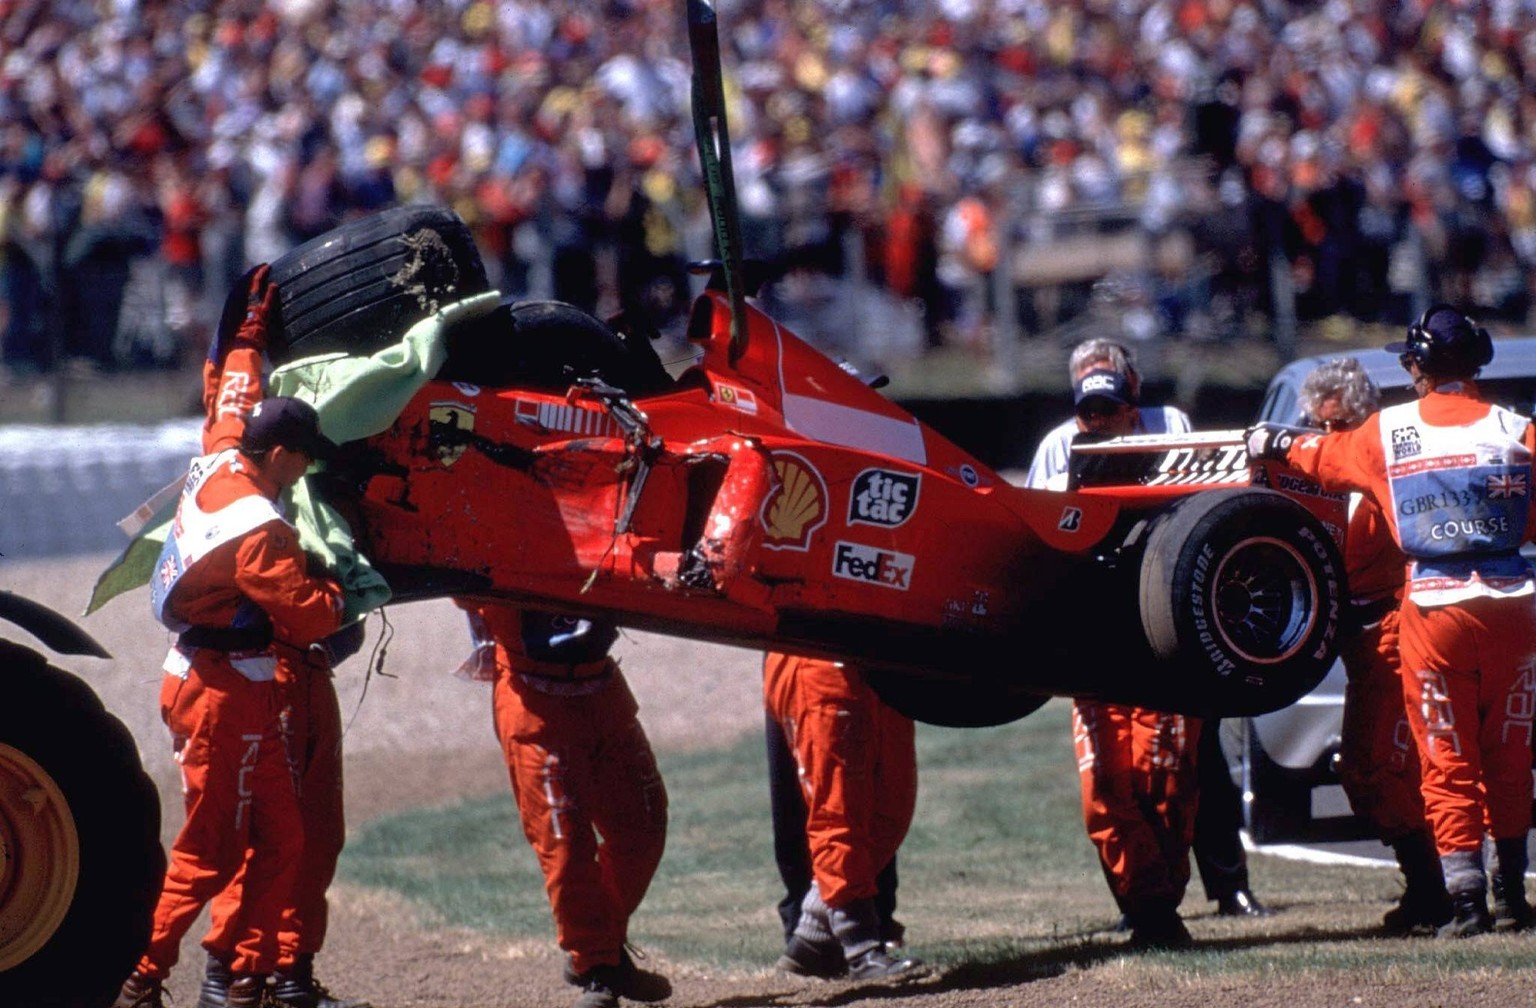 Streckenposten bergen den zerst�rten Boliden von Michael Schumacher (Deutschland / Ferrari), der sich bei dem Unfall selbst das Bein brach und sechs Rennen pausieren musste